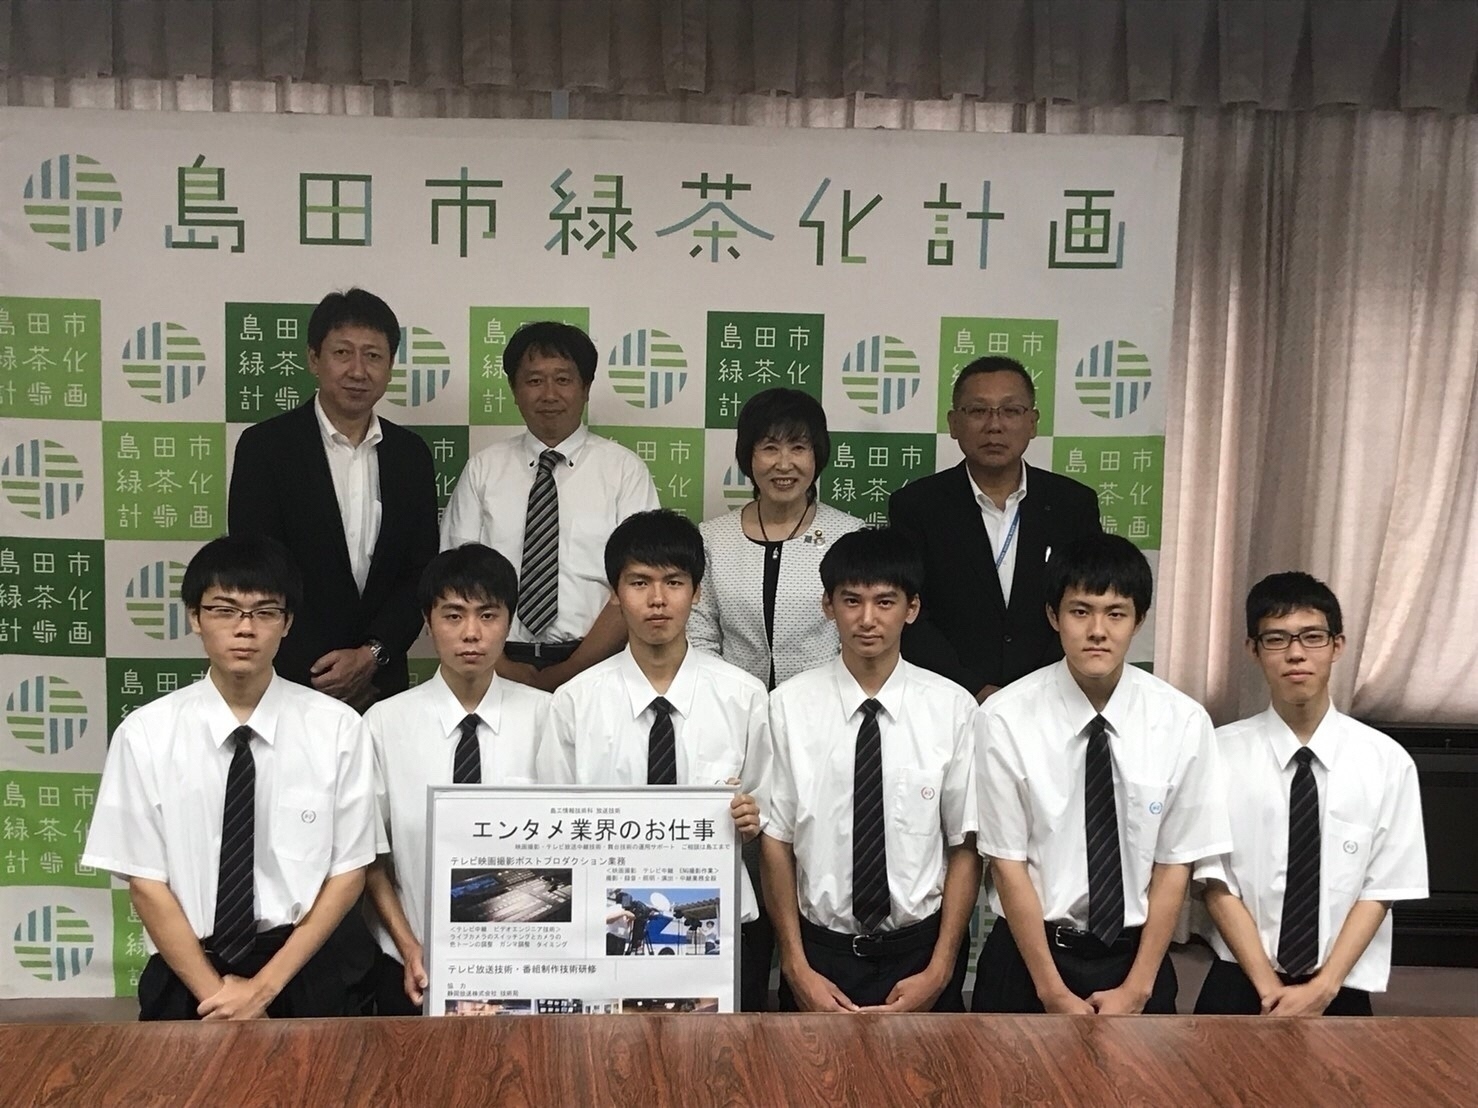 島田工業高校情報技術科の表敬訪問